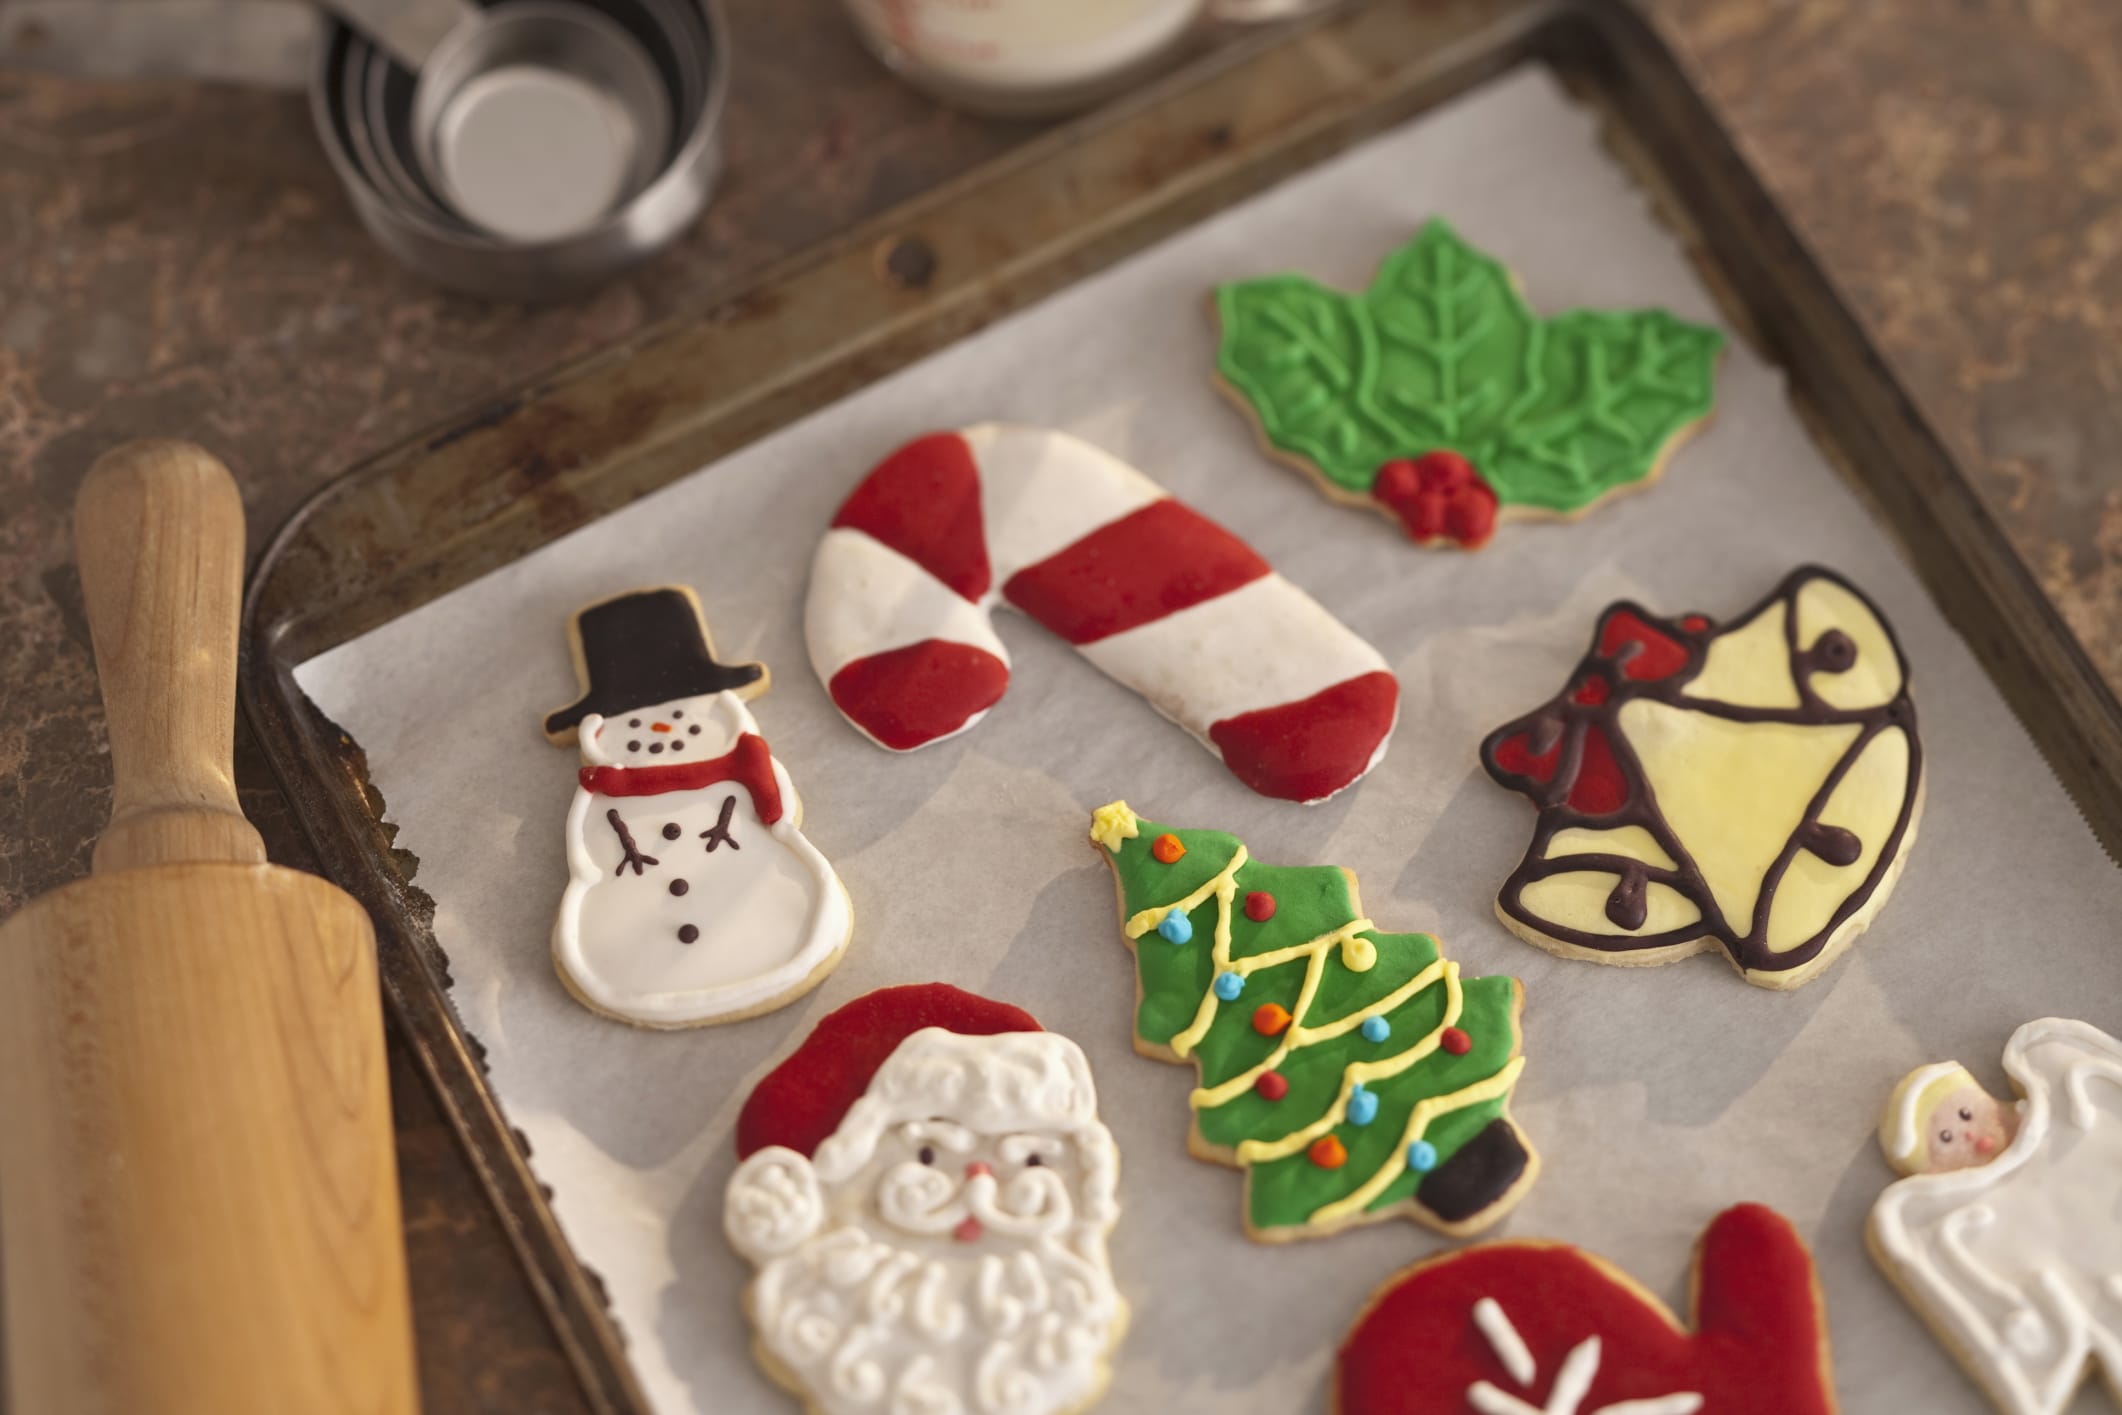 Dolci Natalizi Decorati.Regali Di Natale Fai Da Te I Biscotti Di Pasta Frolla Con La Glassa